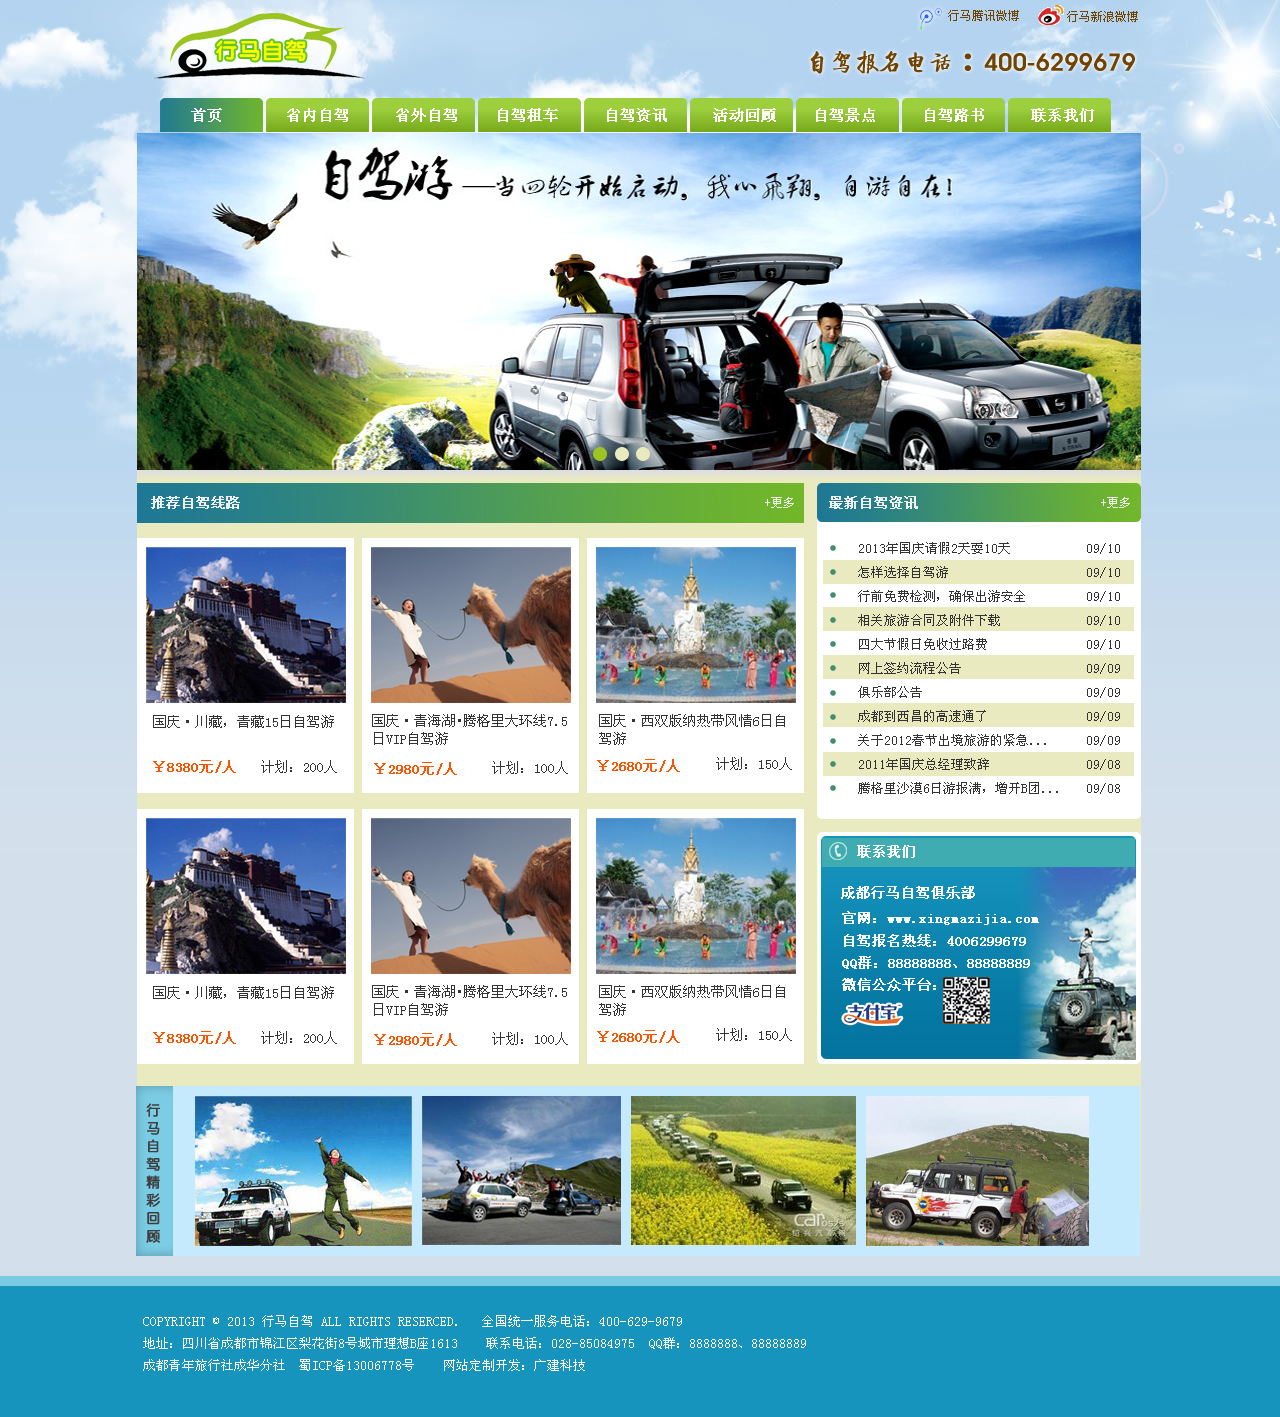 蓝色的户外旅游网站模板设计psd素材下载